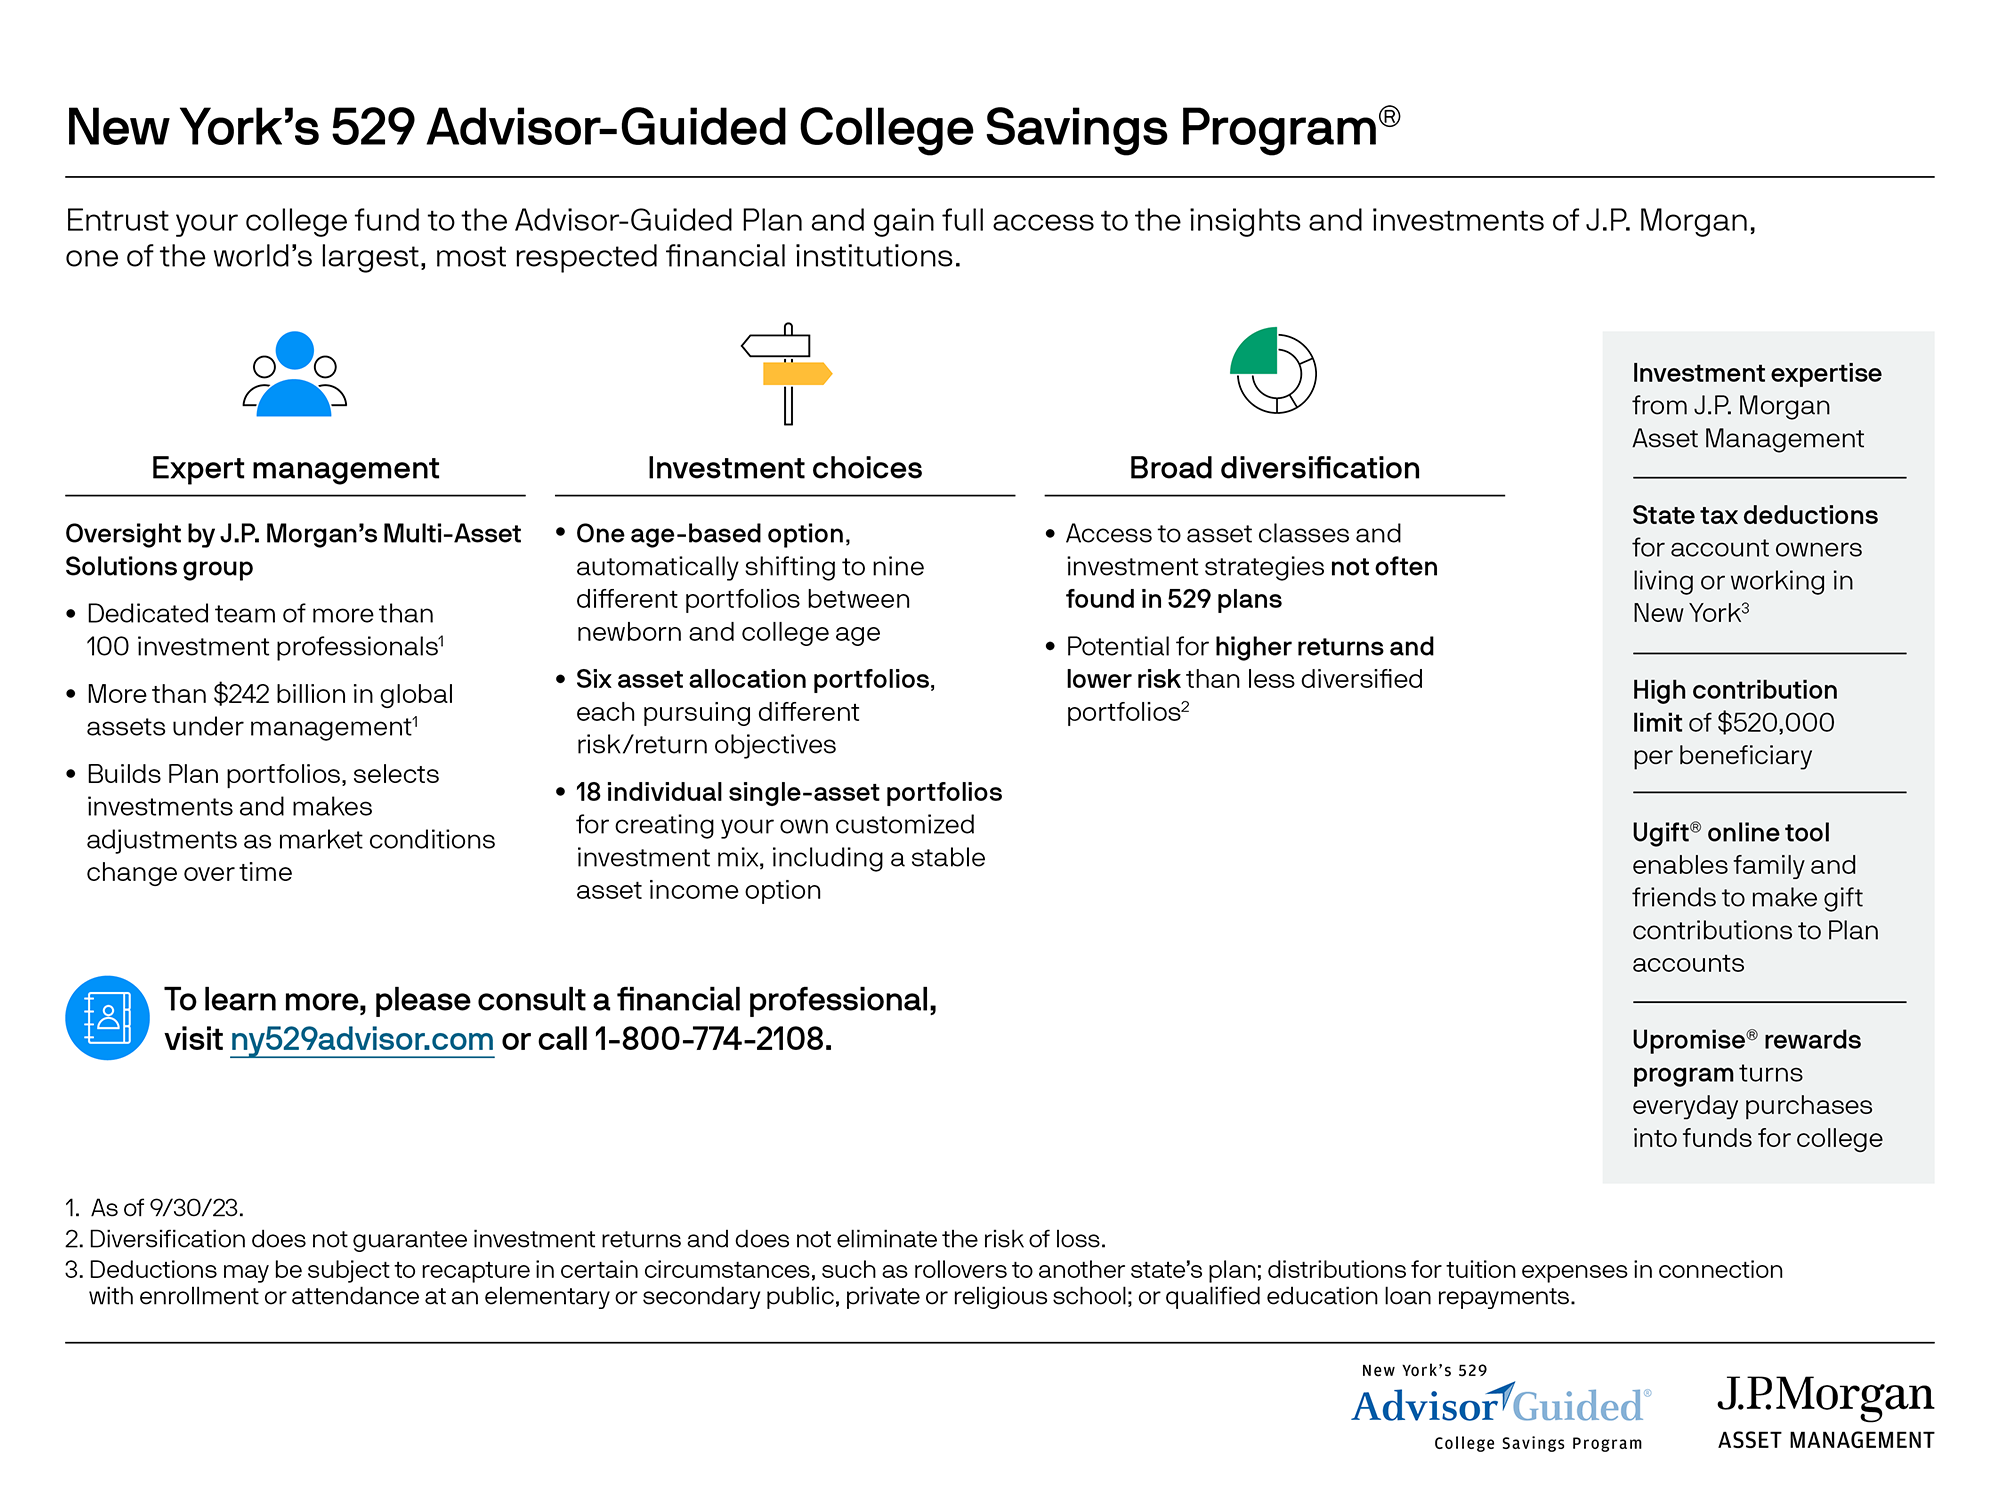 New York's 529 Advisor-Guided College Savings Program